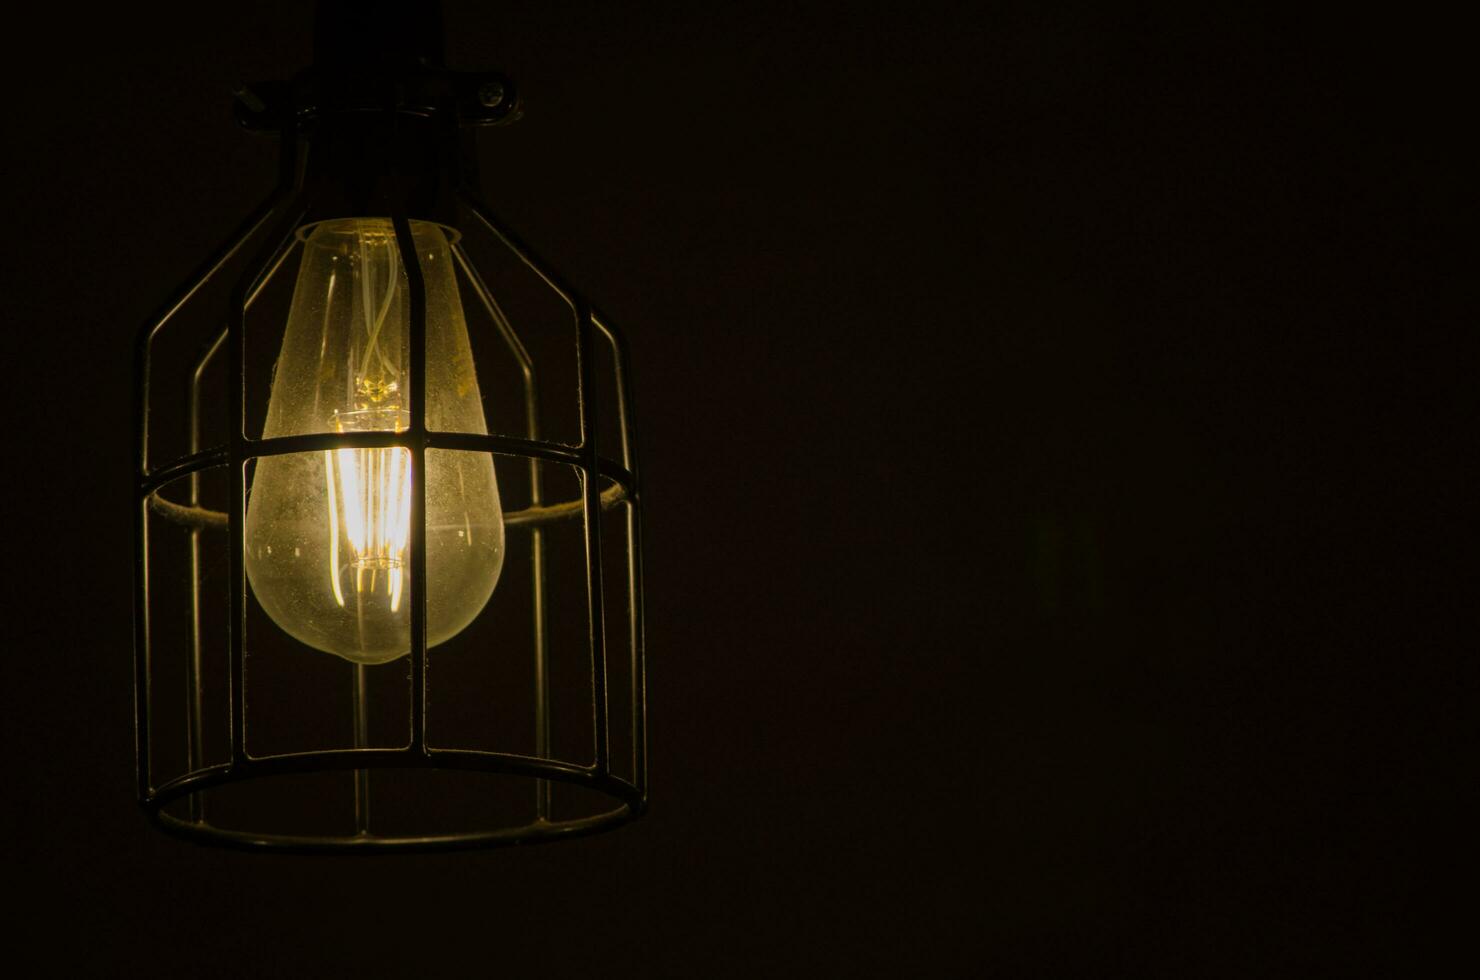 natt fotografi av de ljus Glödlampa, glödande lampa, en tråd tråd den där är uppvärmd fram tills den lyser. med metall bur isolerat på svart bakgrund. foto